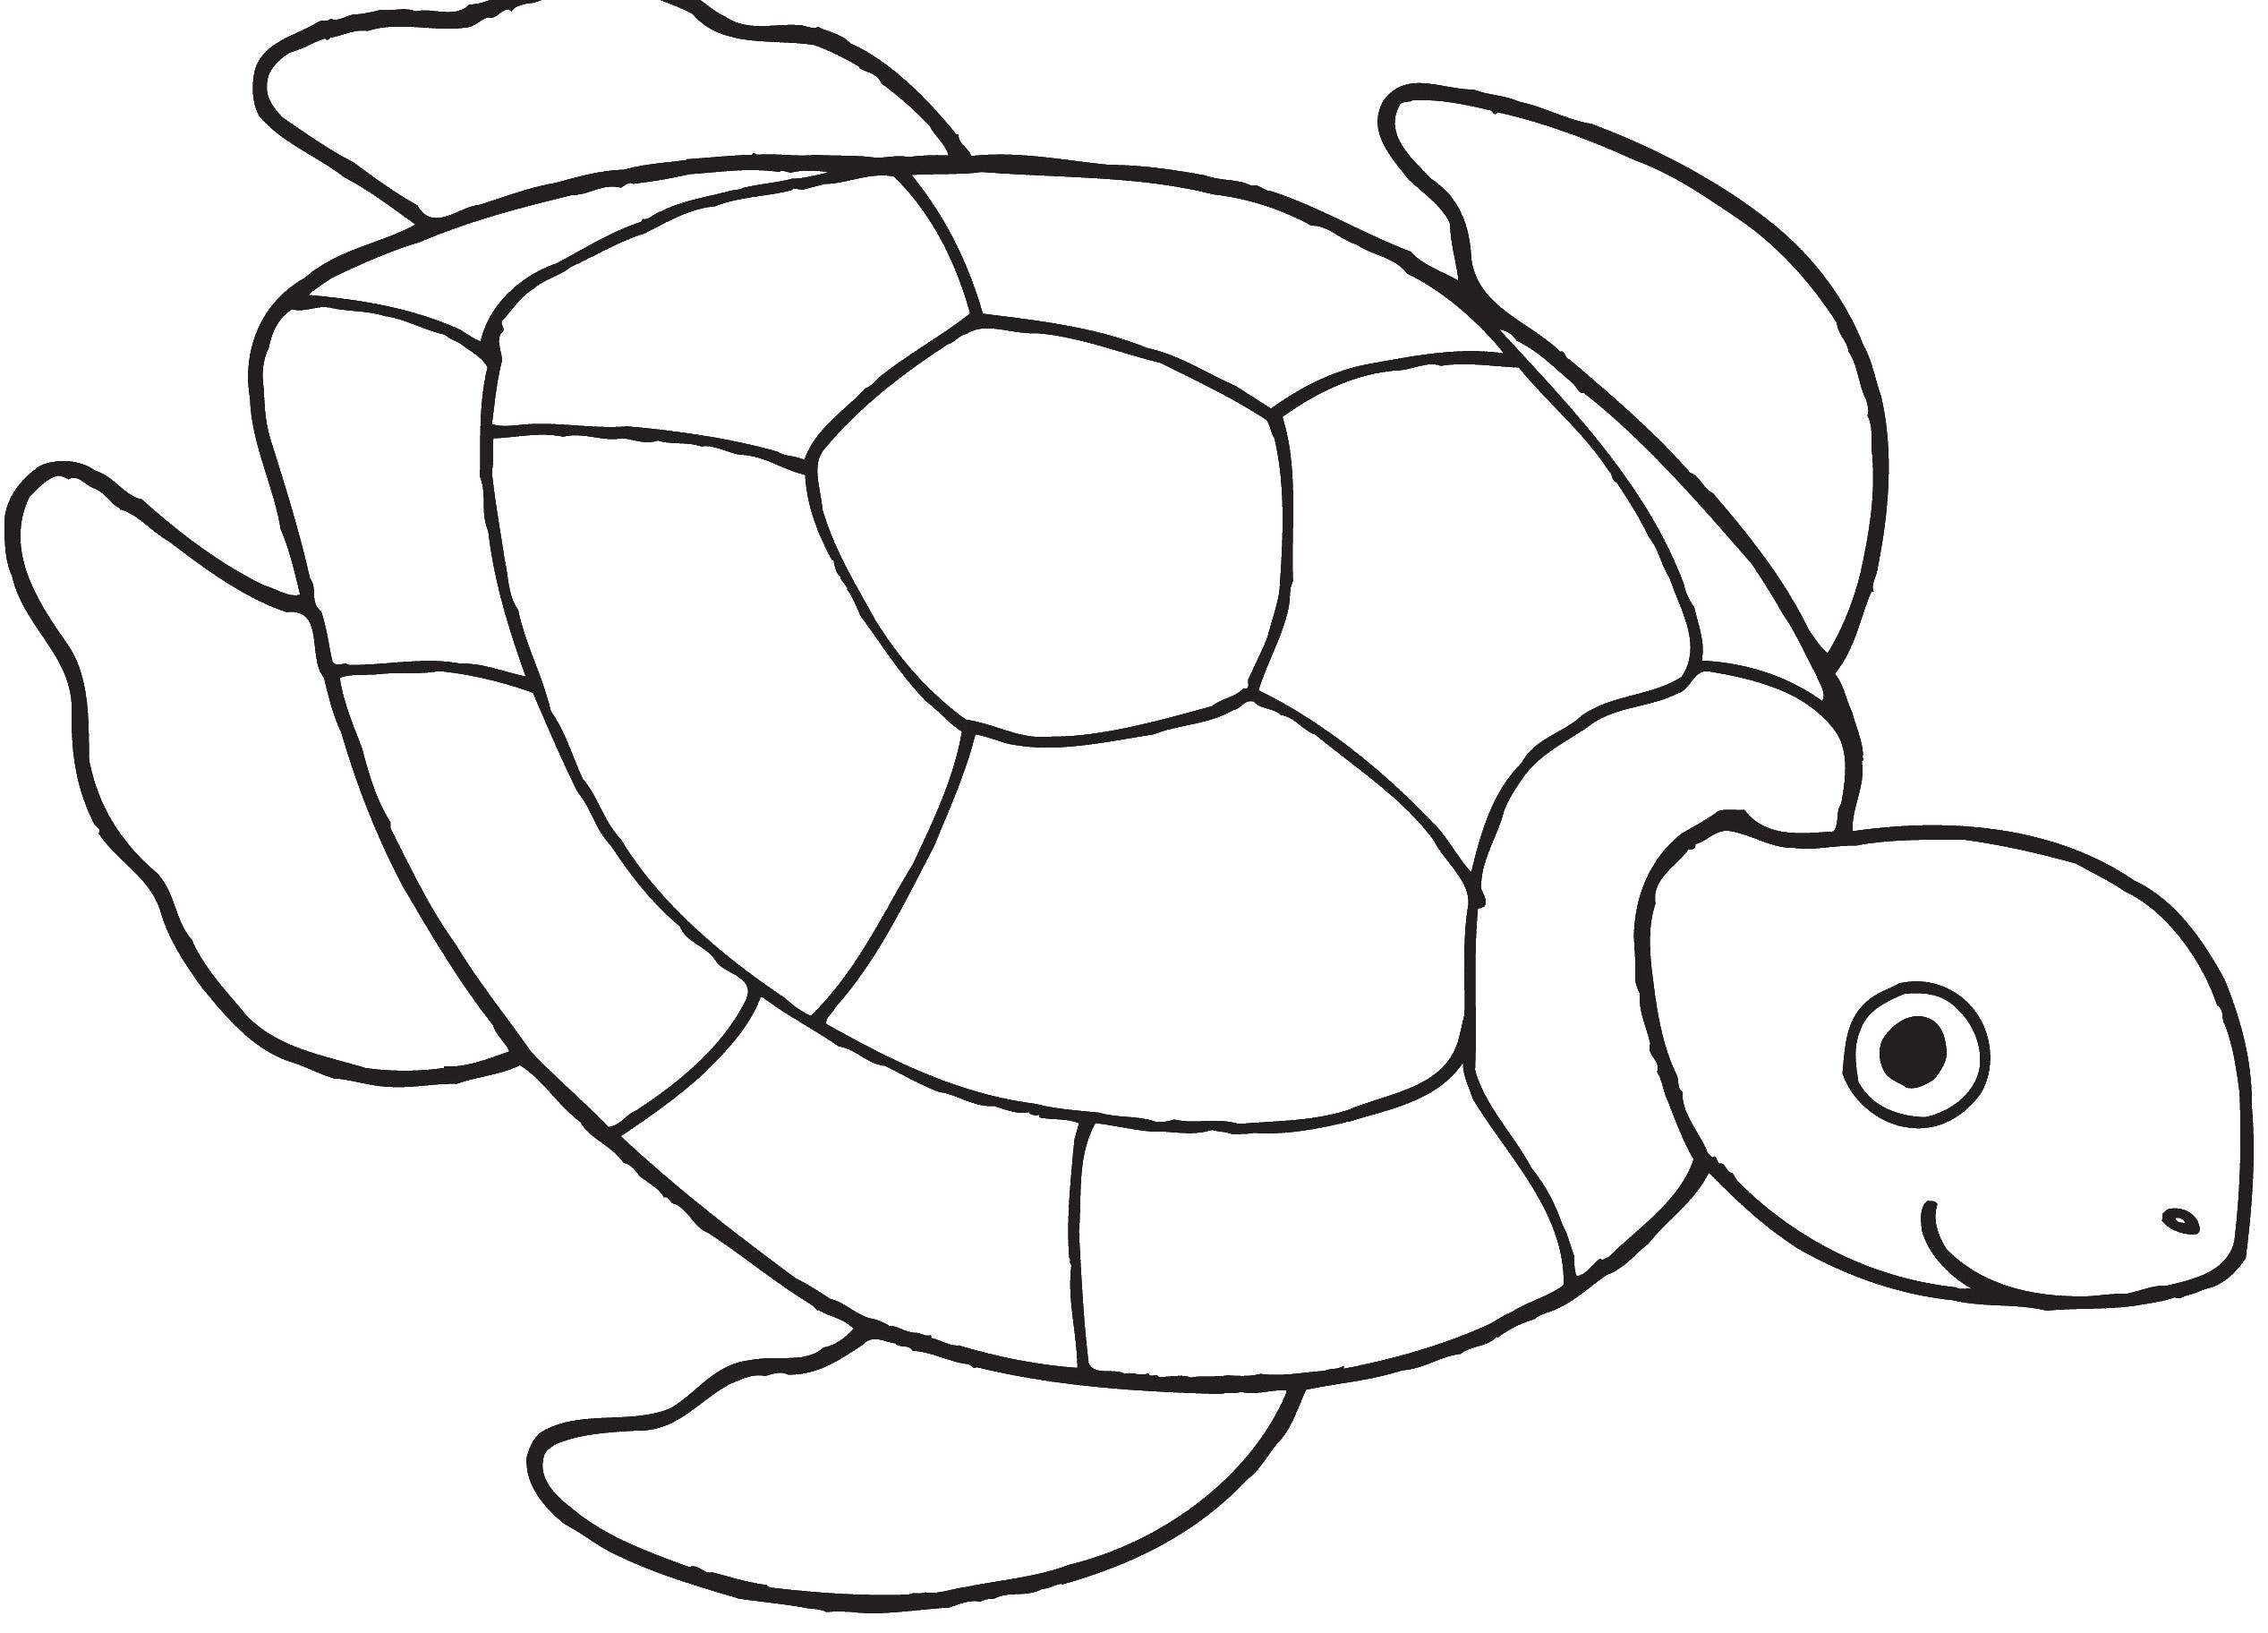 Coloring Floating turtle. Category teenage mutant ninja turtles. Tags:  turtles, sea.